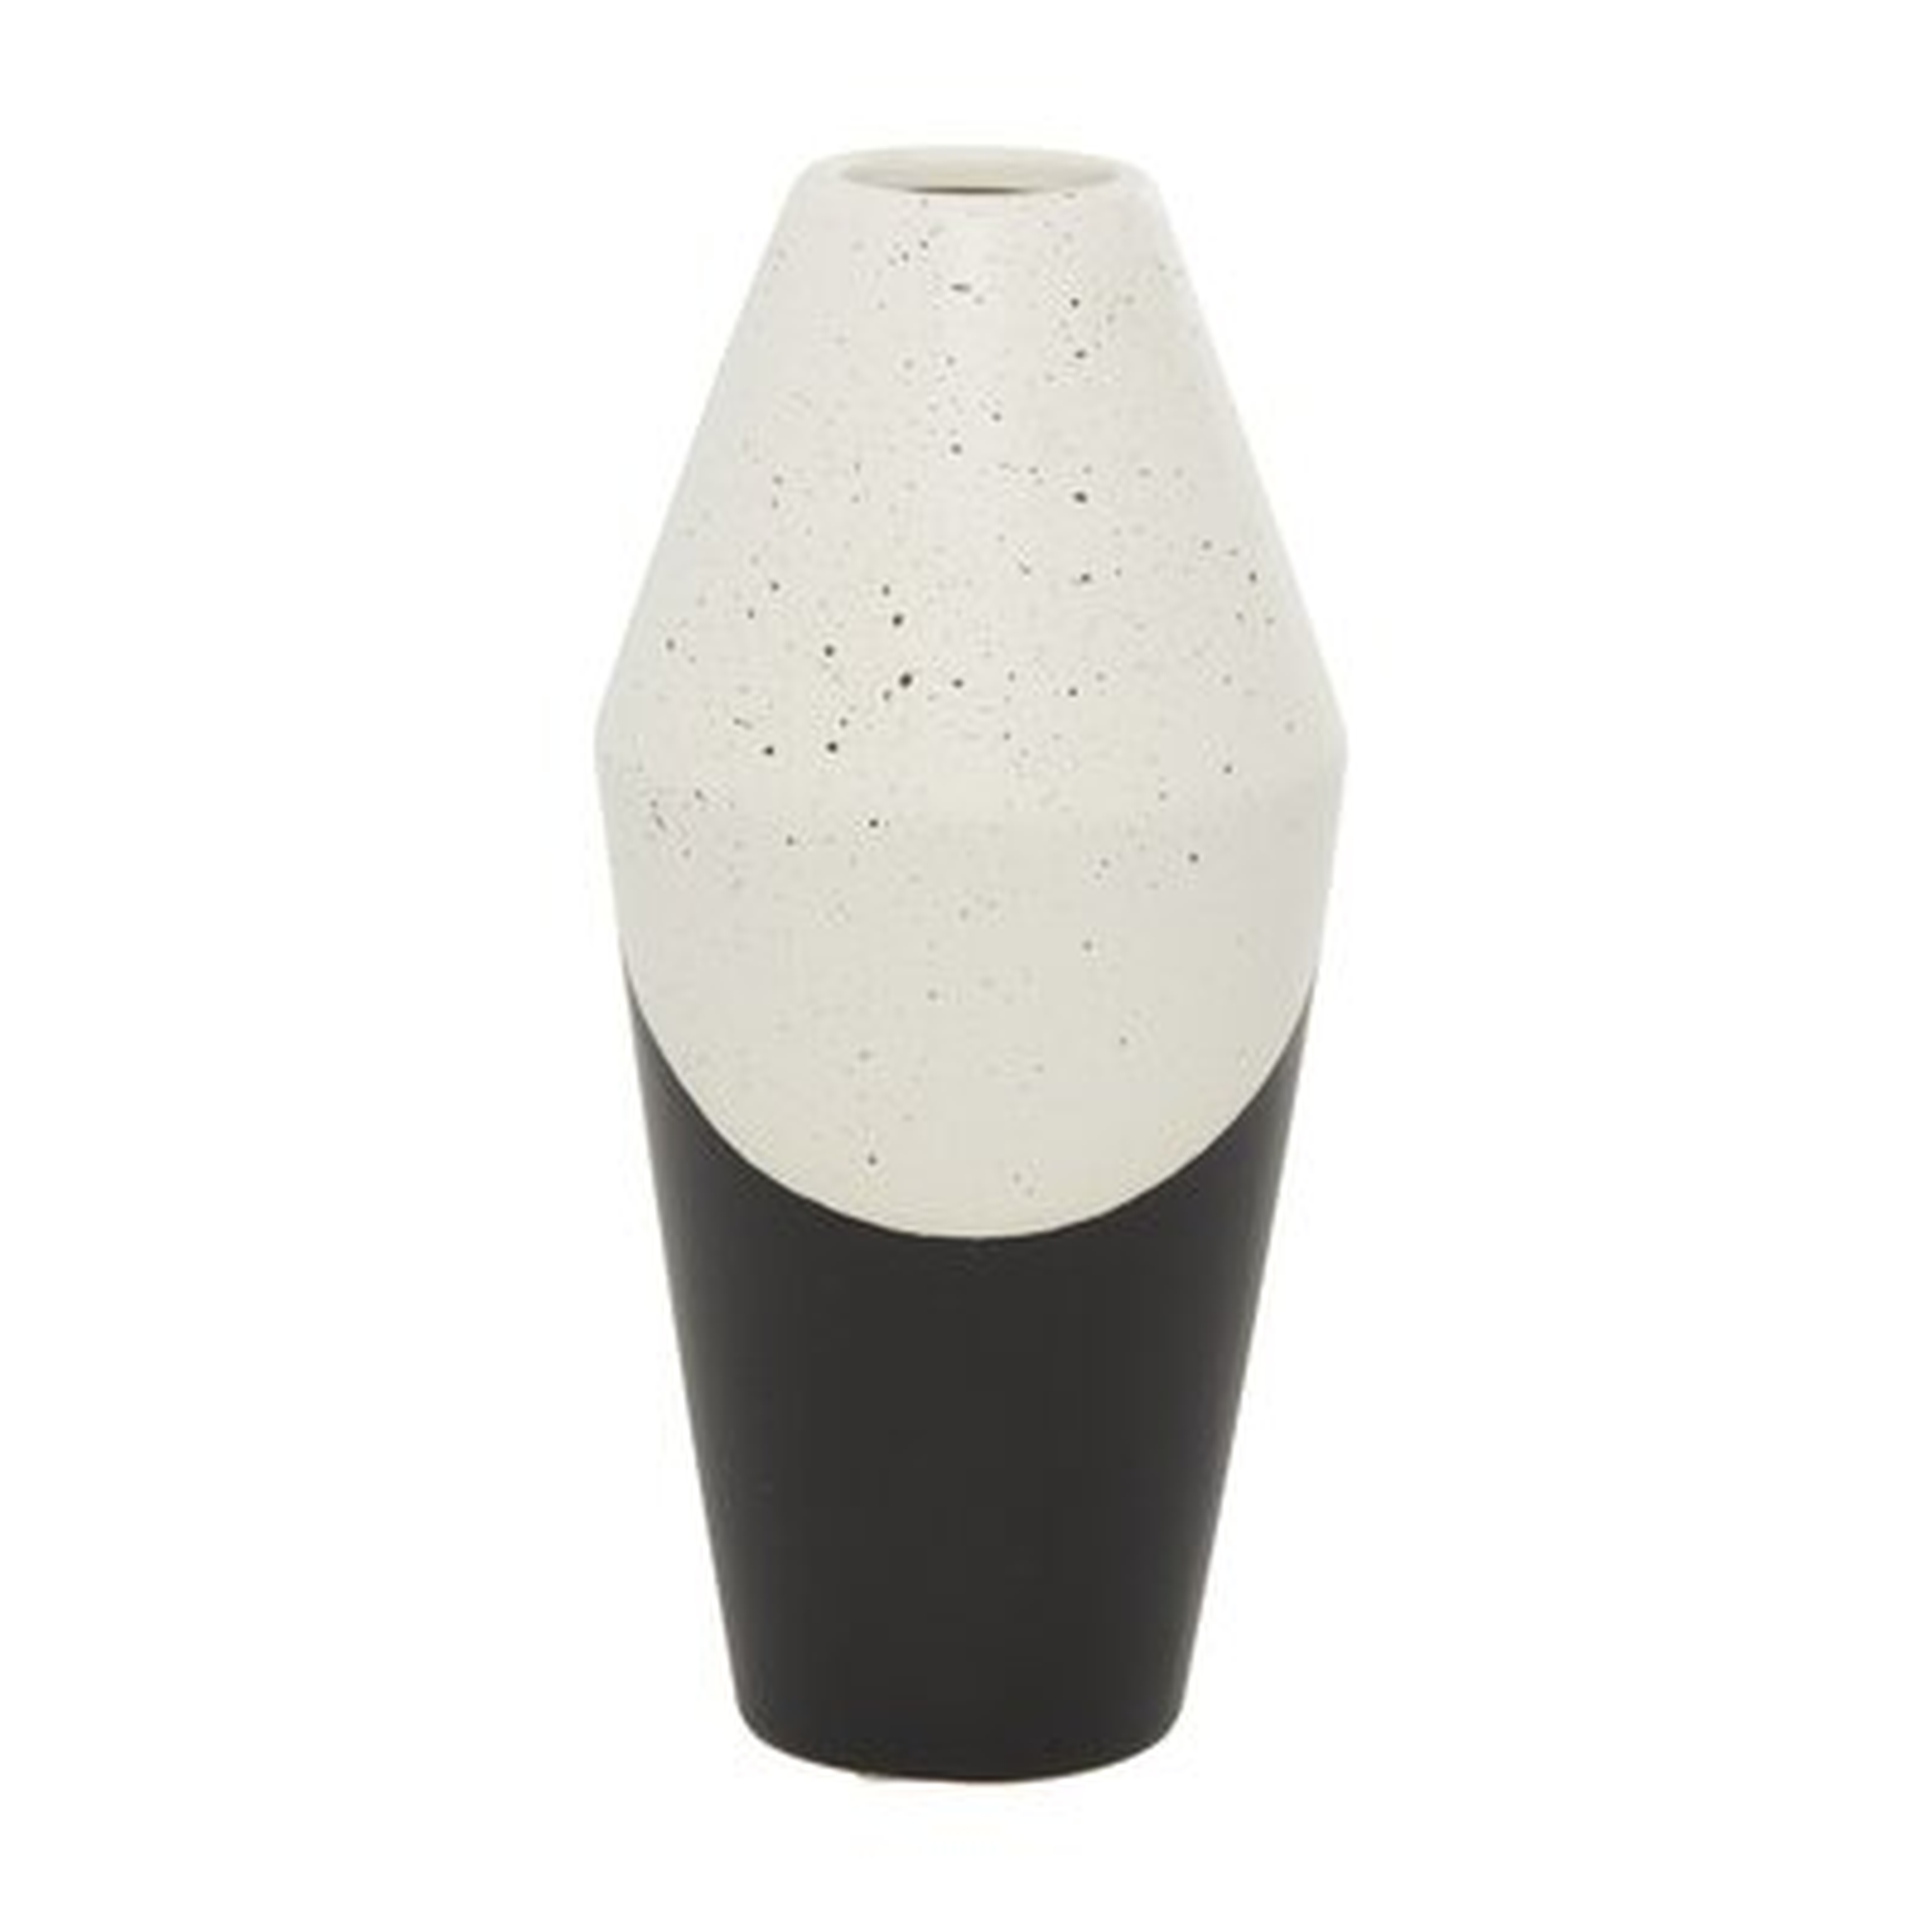 Datilus Ceramic Table Vase - Wayfair